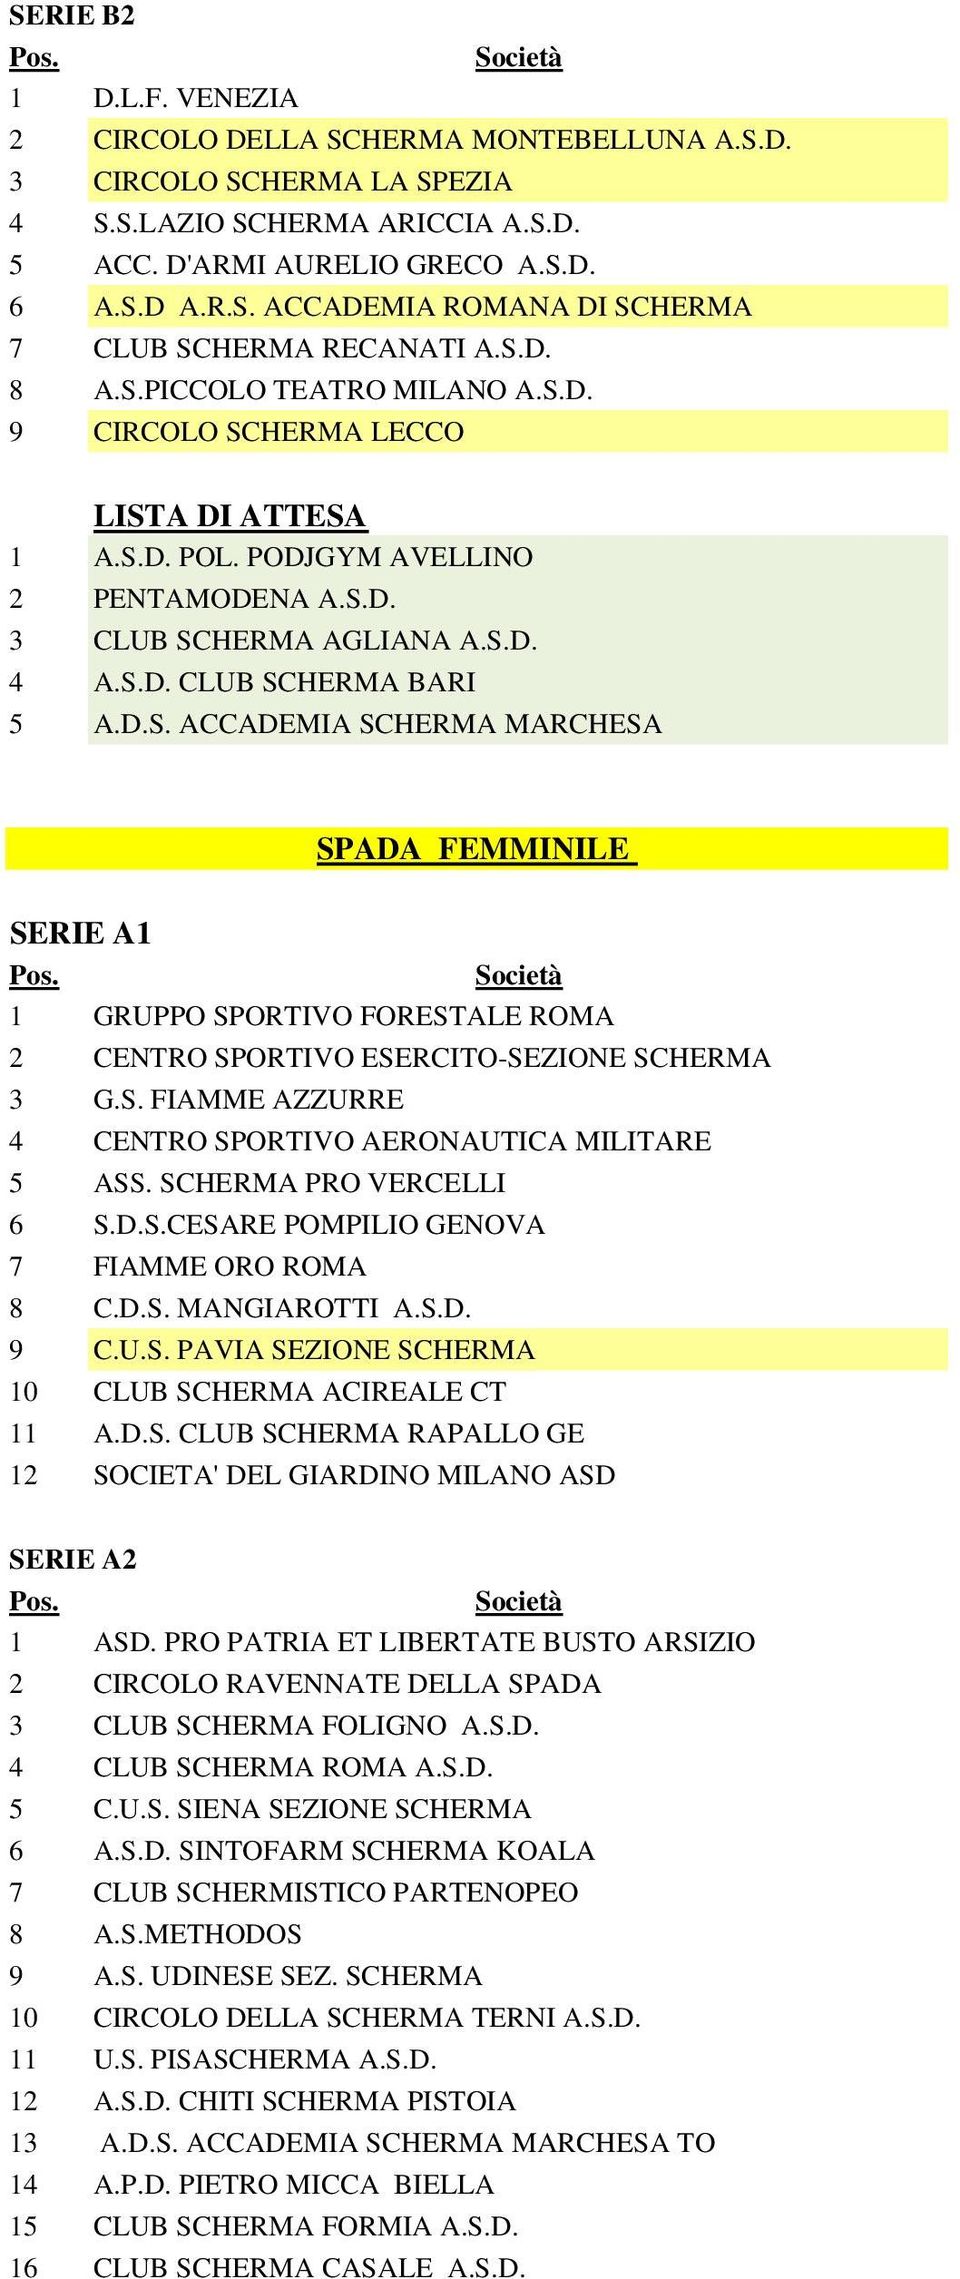 S. FIAMME AZZURRE 4 CENTRO SPORTIVO AERONAUTICA MILITARE 5 ASS. SCHERMA PRO VERCELLI 6 S.D.S.CESARE POMPILIO GENOVA 7 FIAMME ORO ROMA 8 C.D.S. MANGIAROTTI A.S.D. 9 C.U.S. PAVIA SEZIONE SCHERMA 10 CLUB SCHERMA ACIREALE CT 11 A.